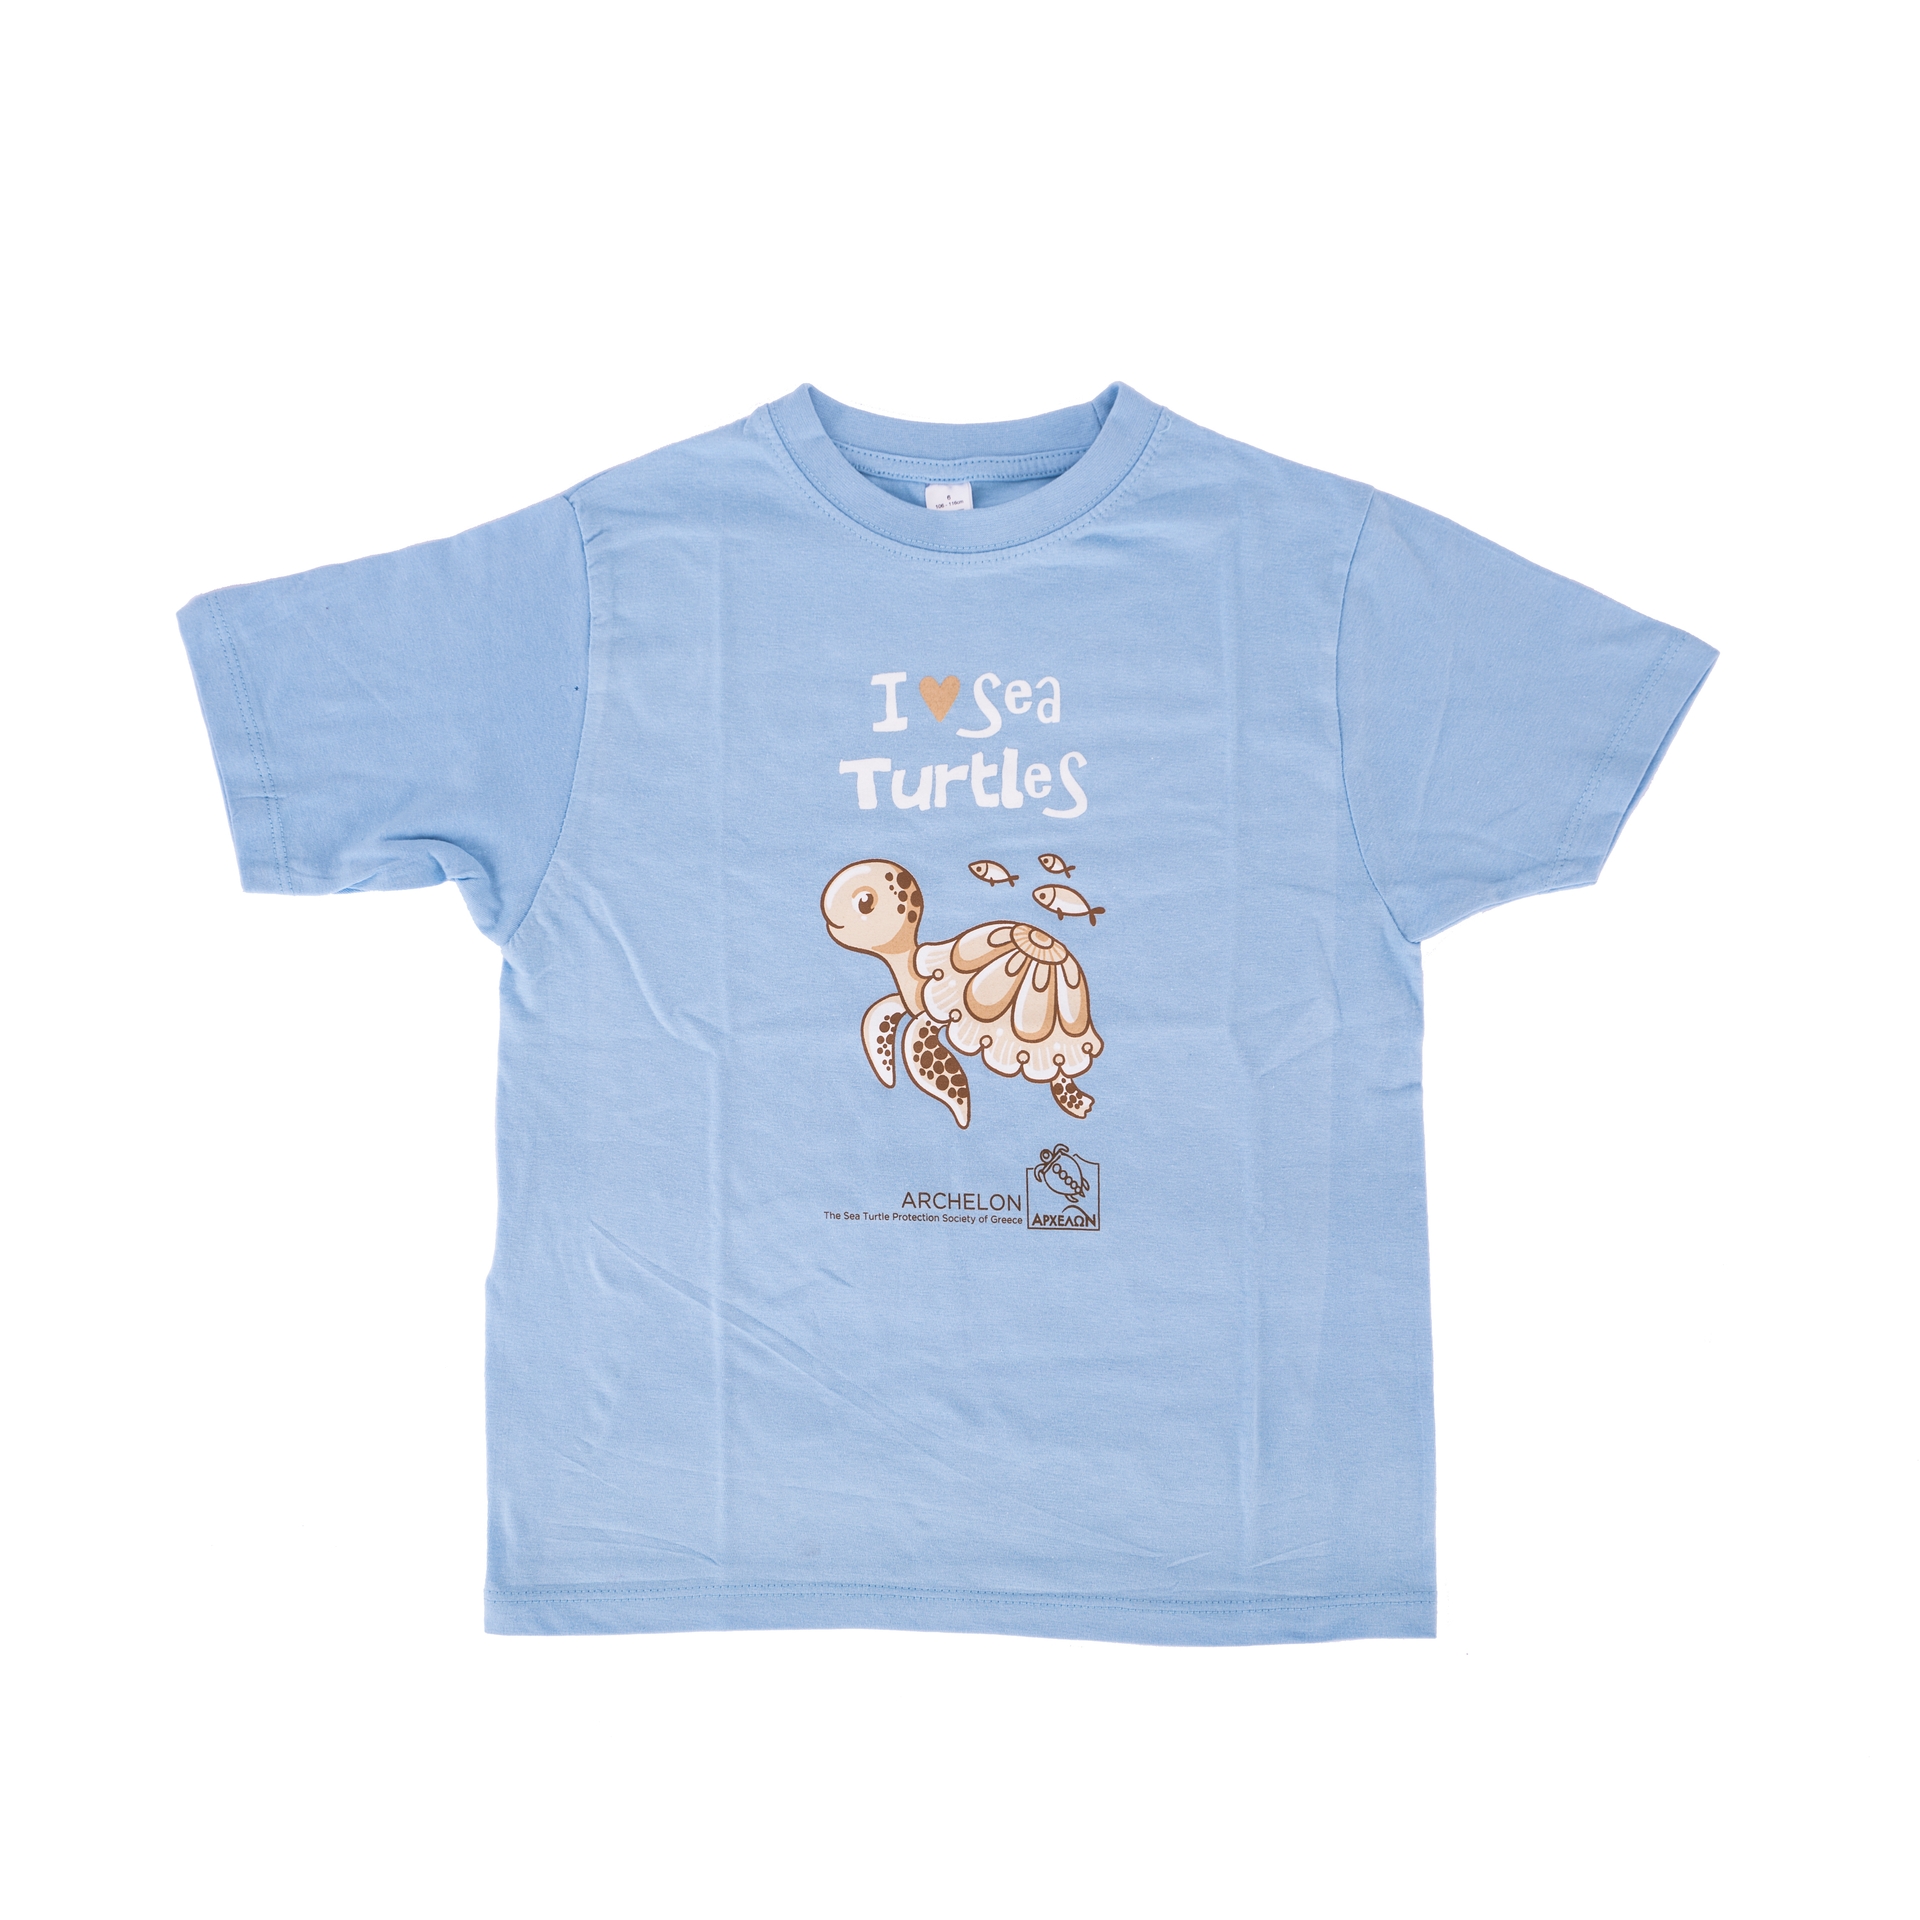 T-shirt for kids Blue.jpg